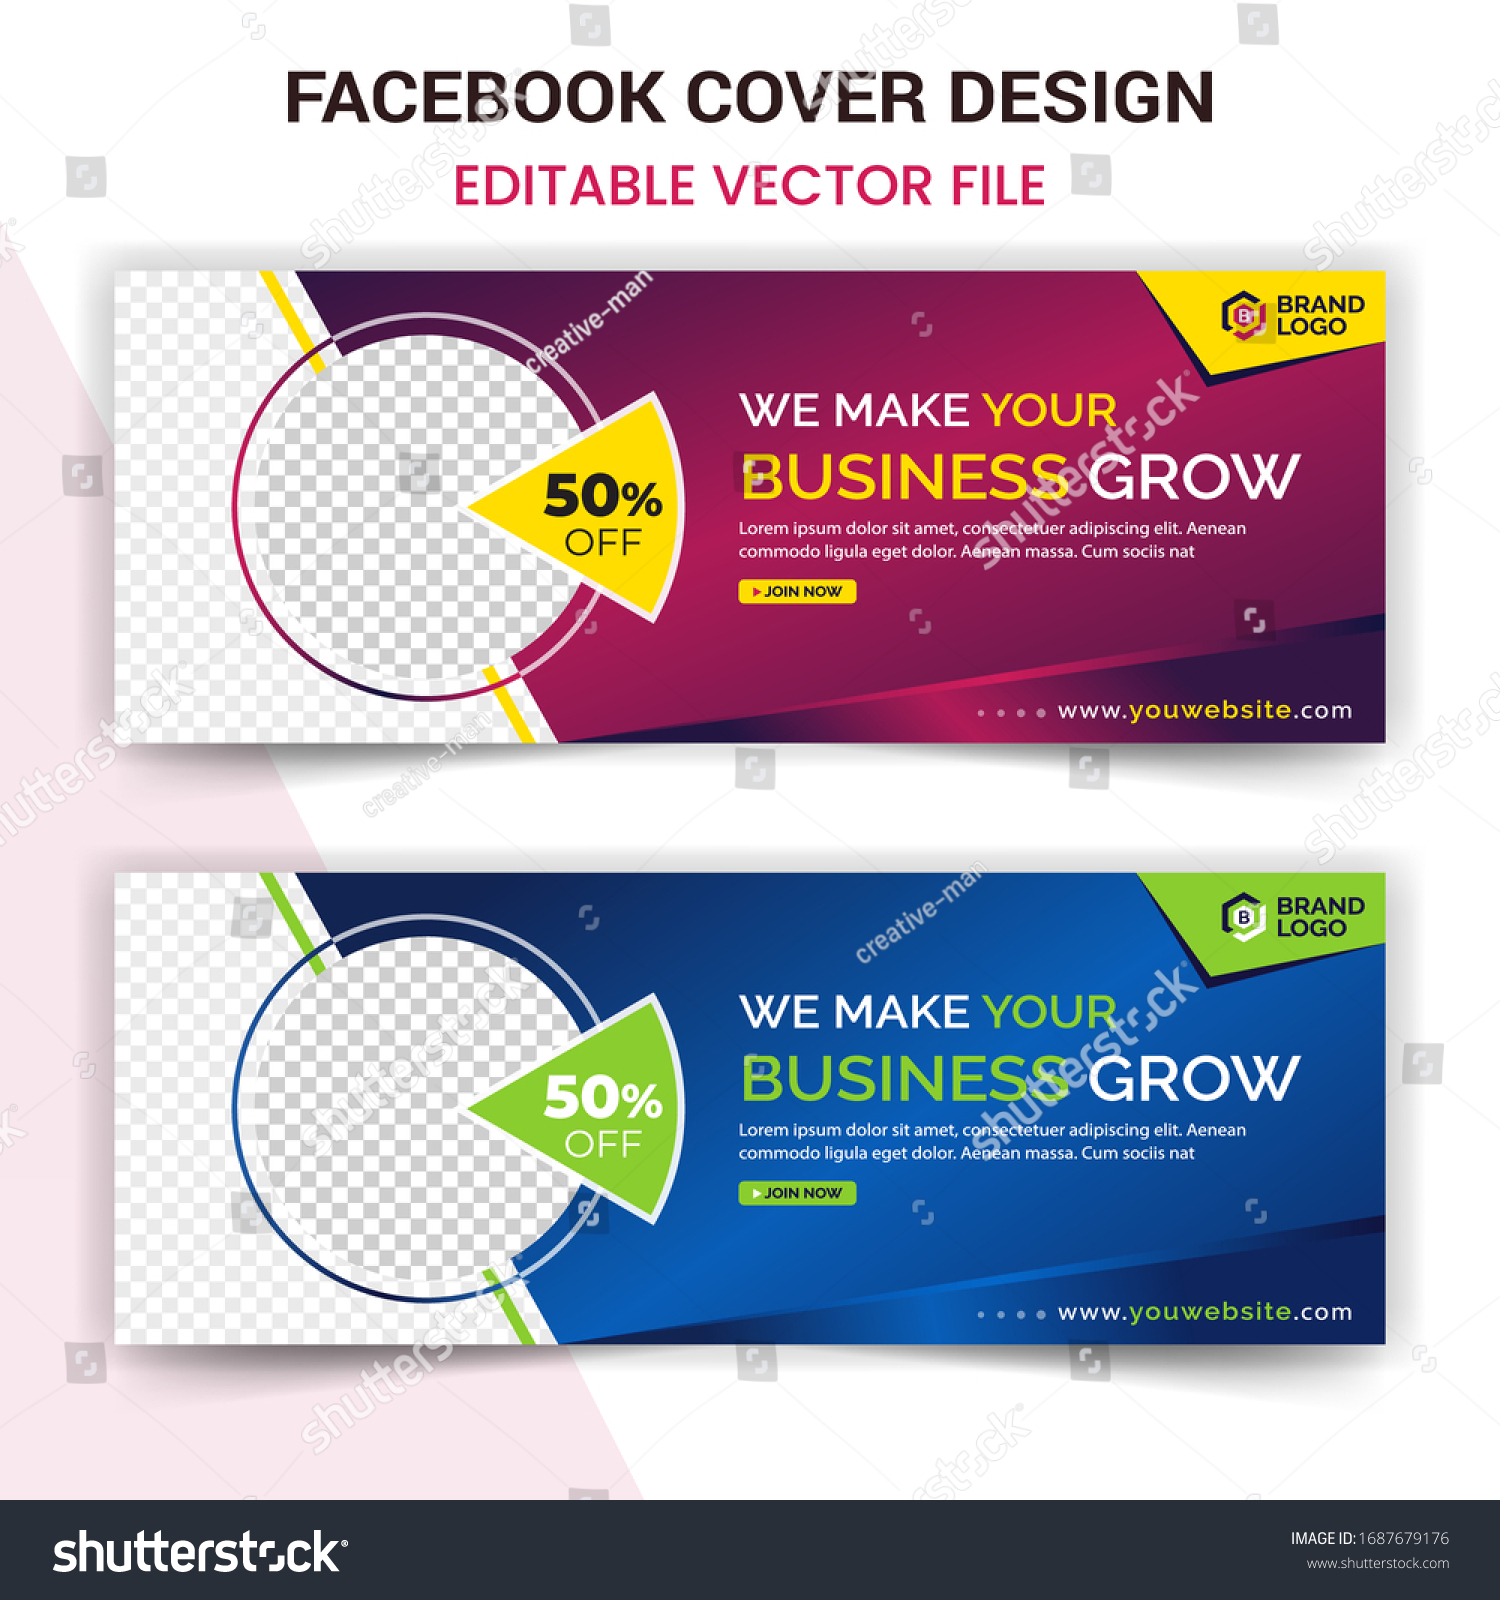 Facebook Cover Design Template Vector Eps Stock Vector Royalty Free